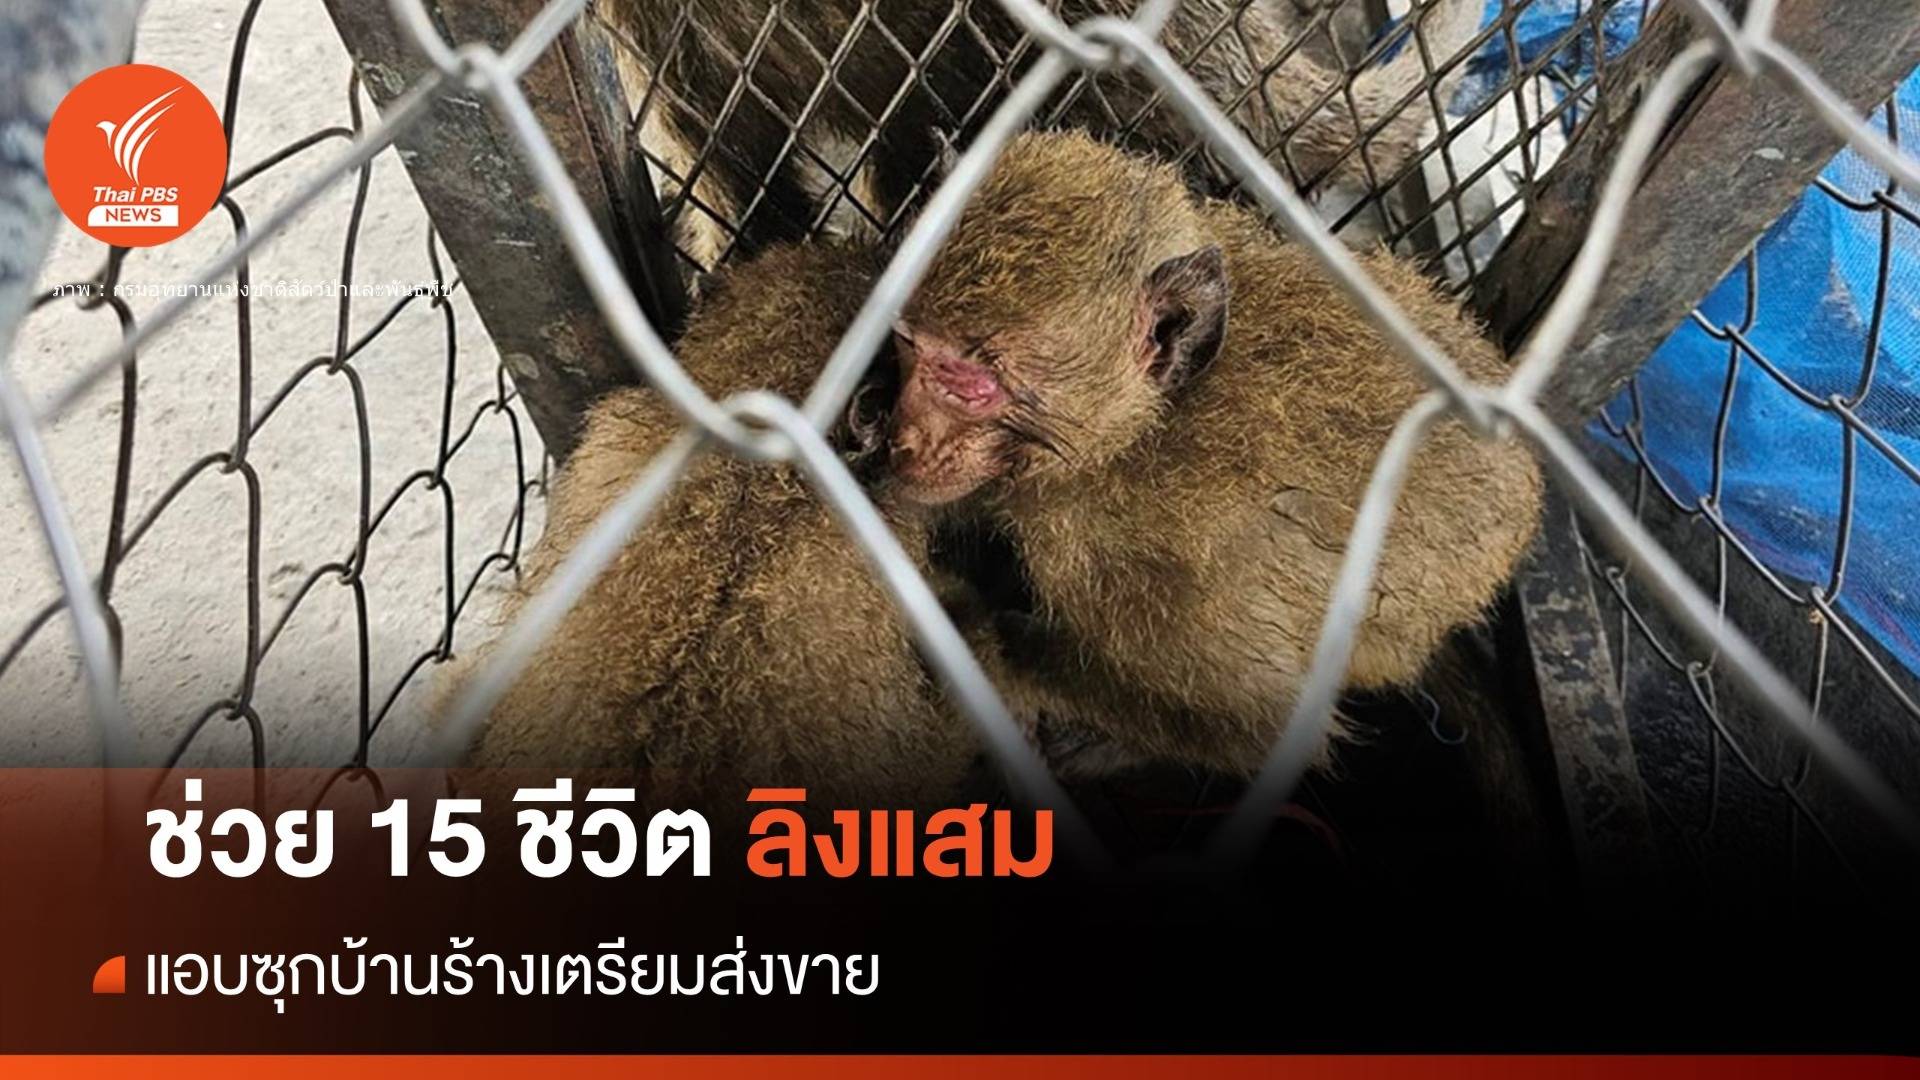 ช่วย 15 ชีวิต "ลิงแสม" พ้นขบวนการลักลอบค้าลิงข้ามชาติ